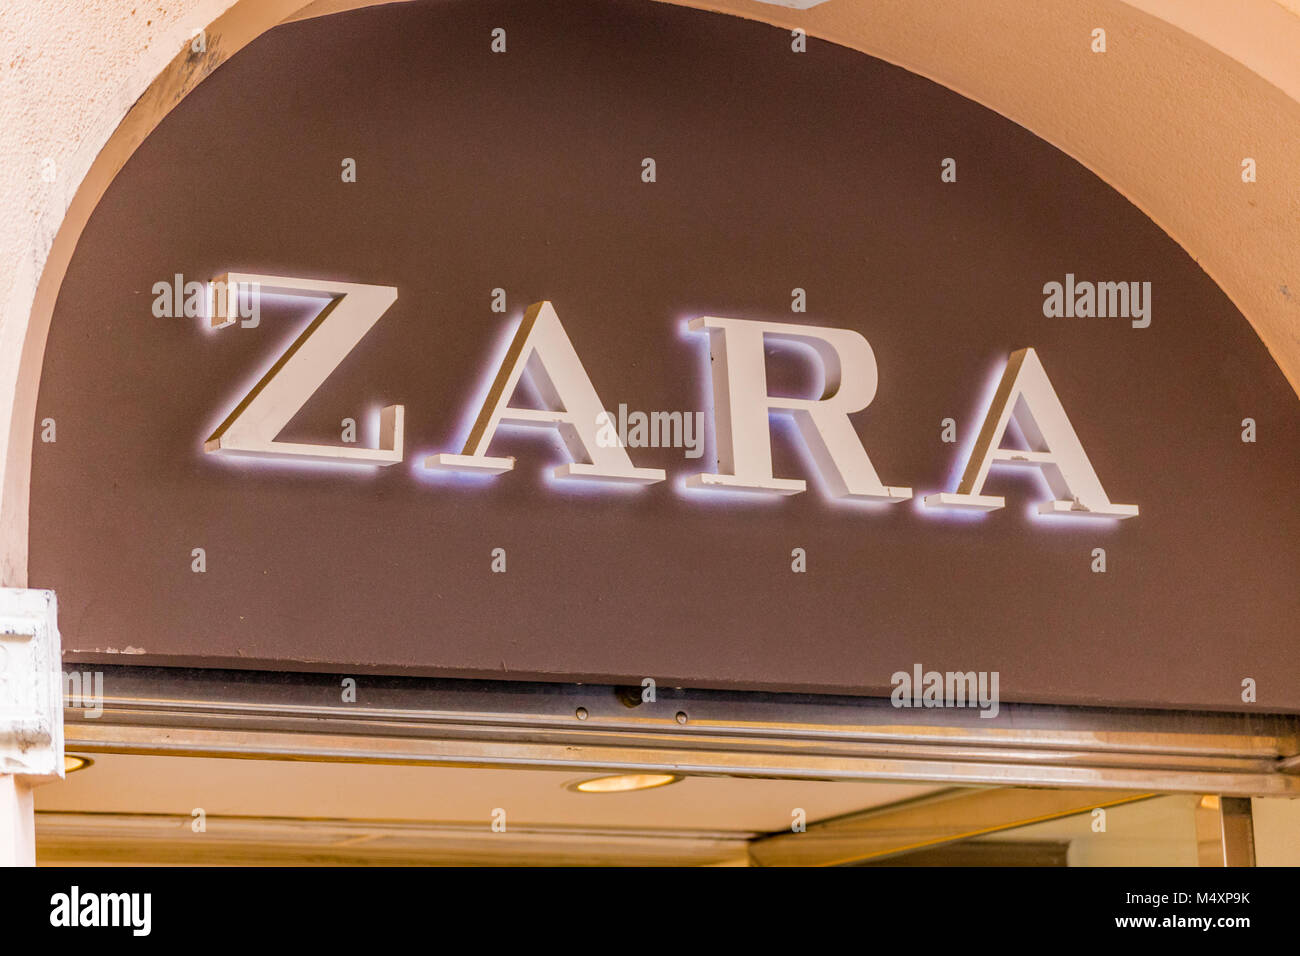 RAVENNA, Italien - 15. FEBRUAR 2018: Zara logo Zeichen der Straße Shop. 65  Prozent der Zara-Produkte sind in Spanien, Portugal, der Türkei und  Nordafrika gemacht Stockfotografie - Alamy